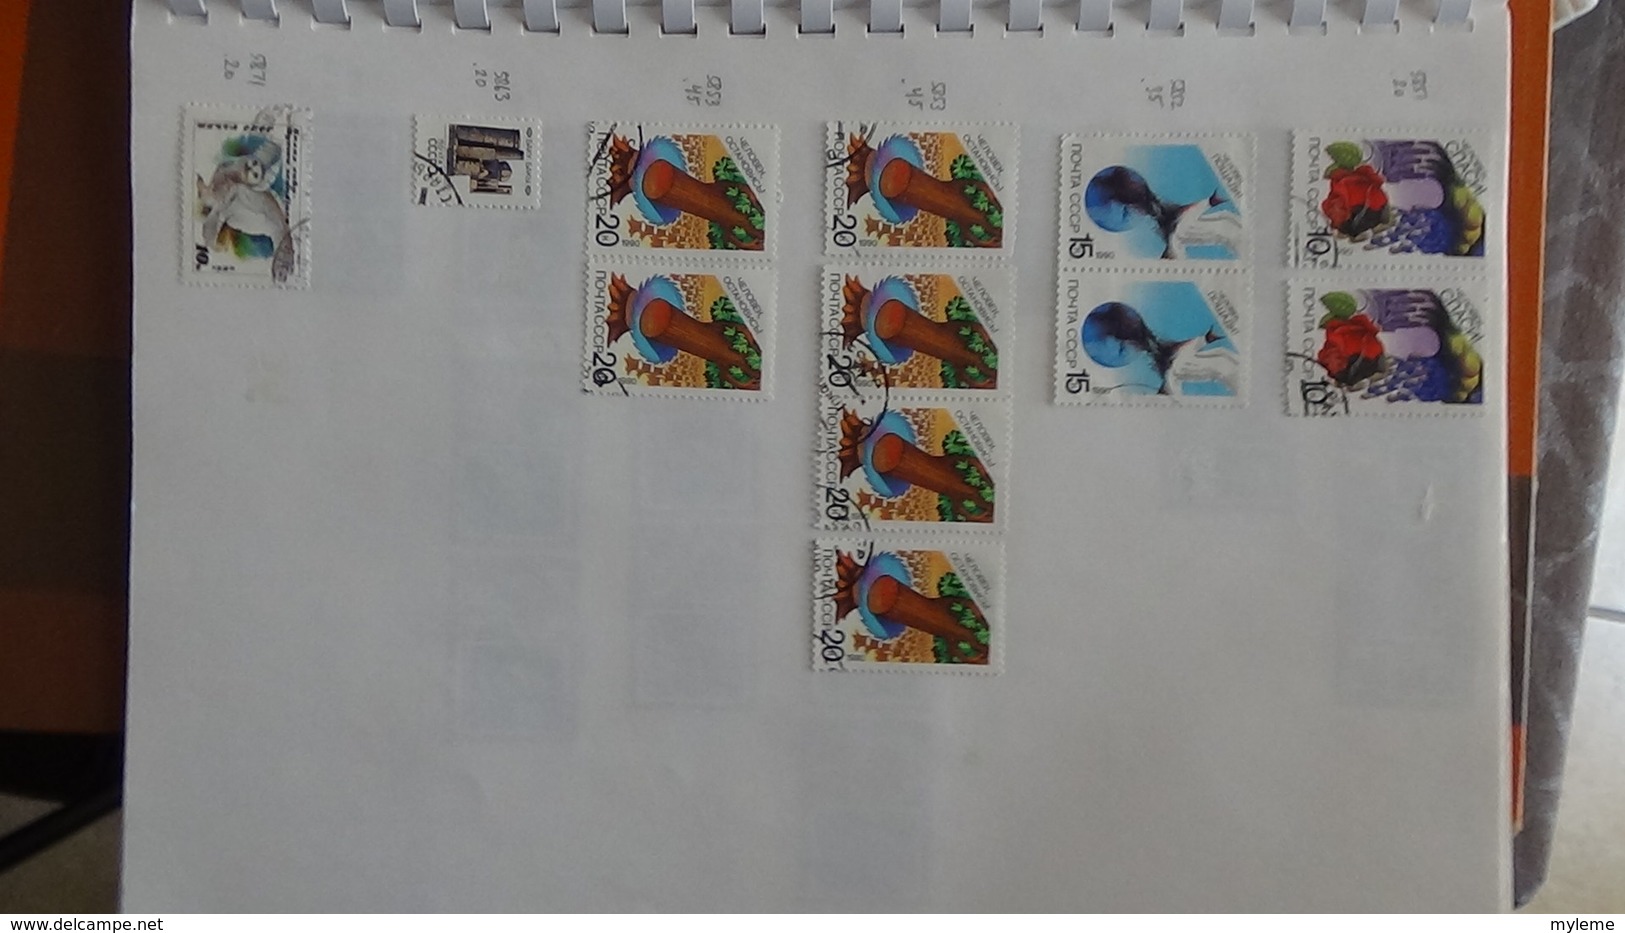 A256 Cahier de timbres de Russie  !!! Voir commentaires